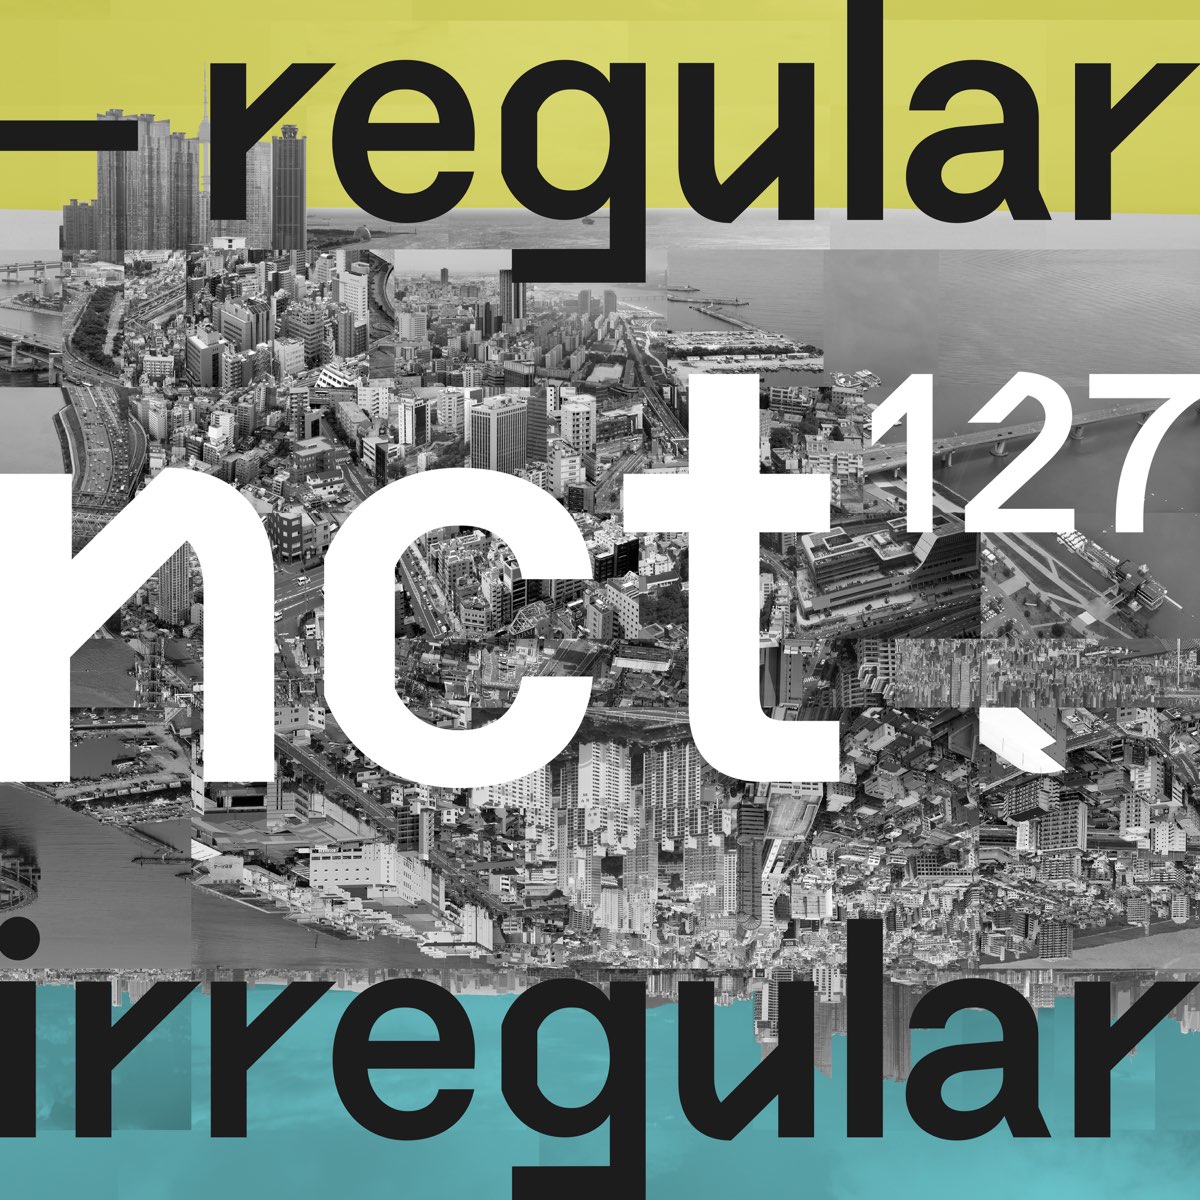 NCT 127 — Regular cover artwork